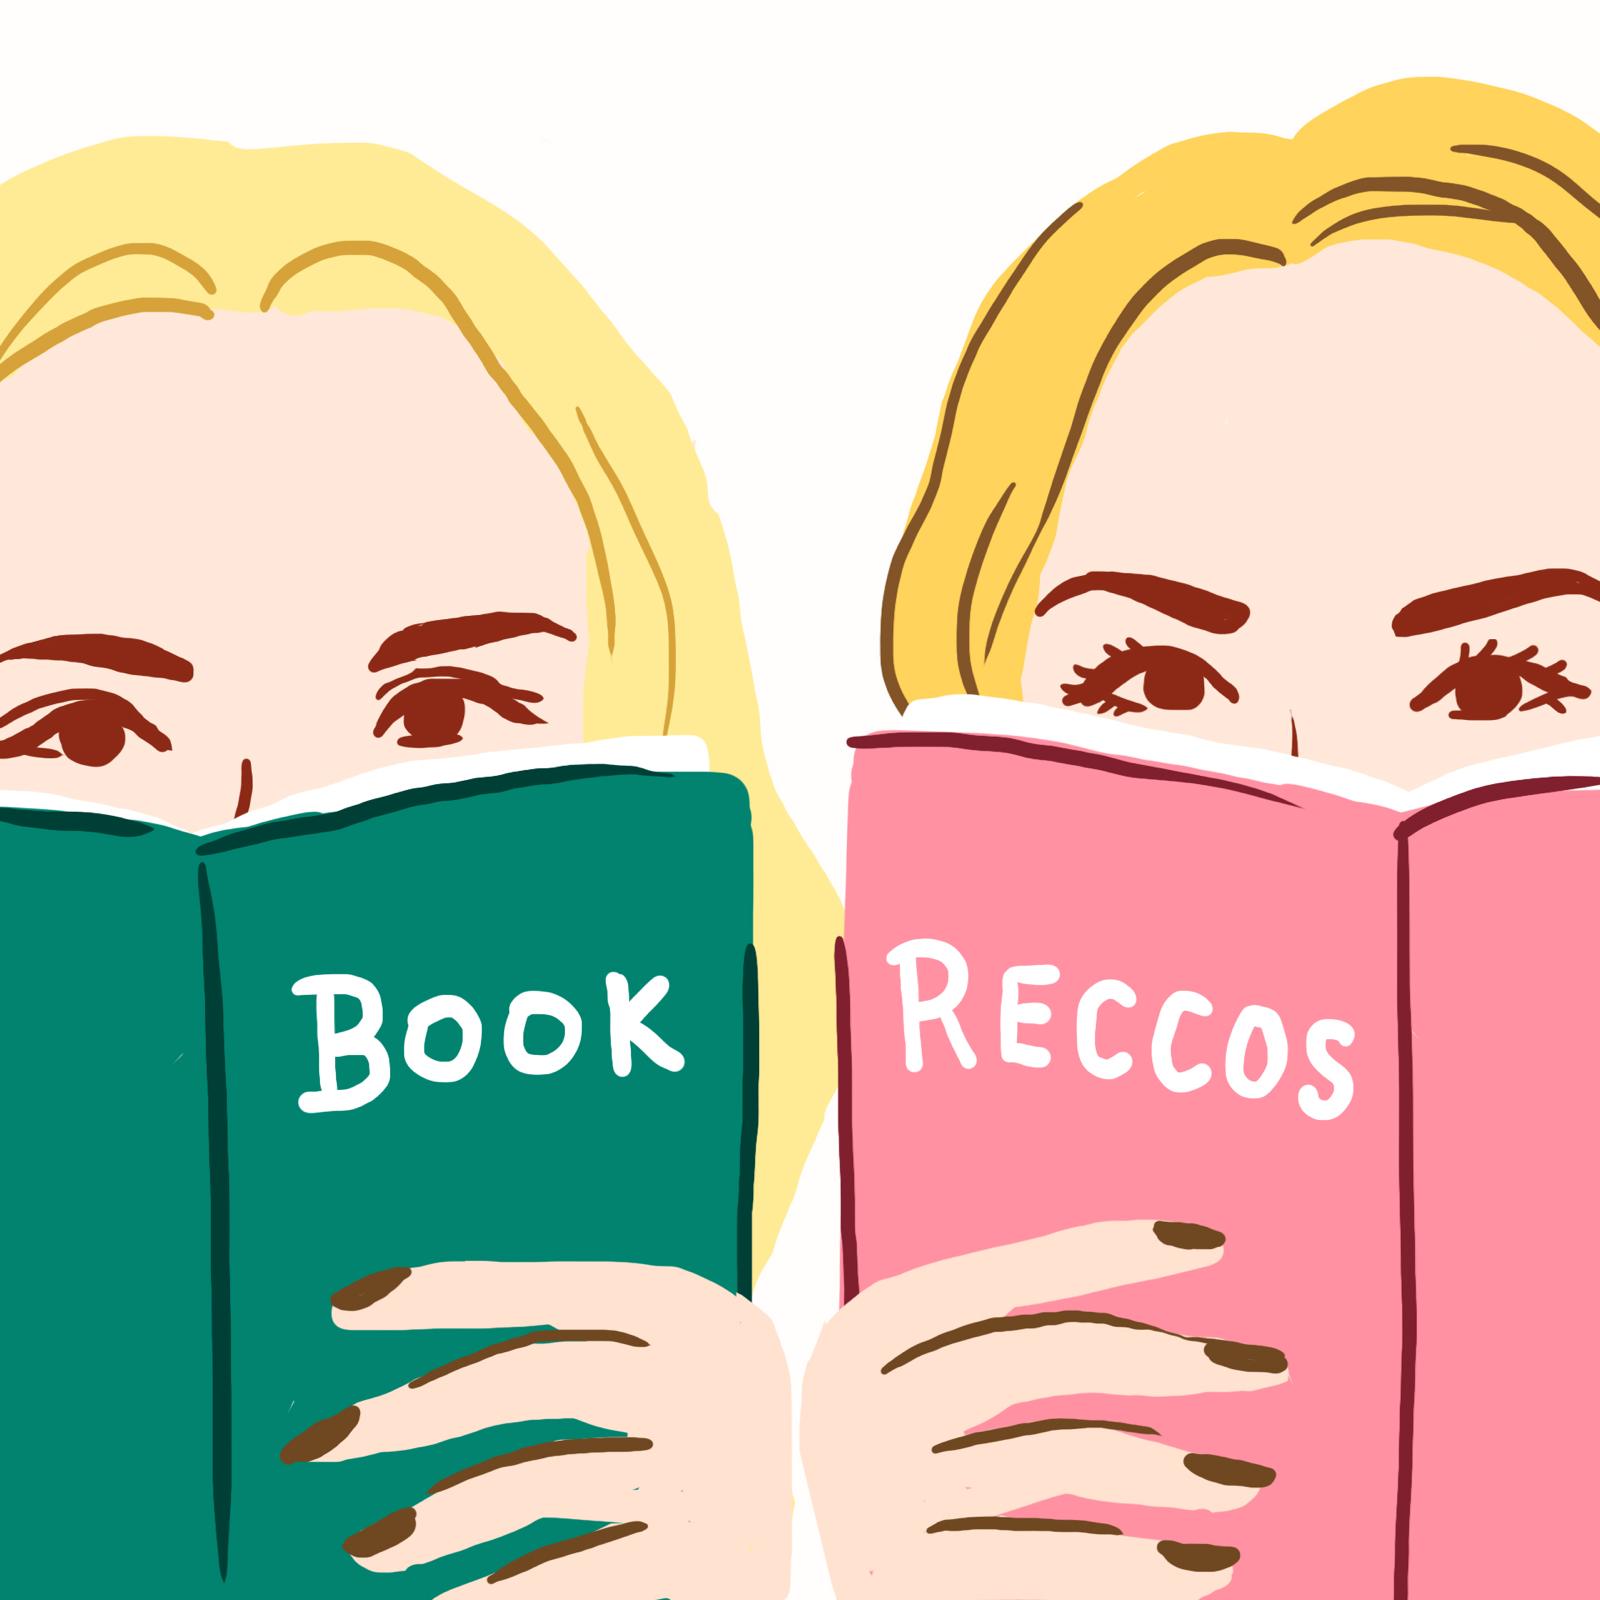 book reccos logo